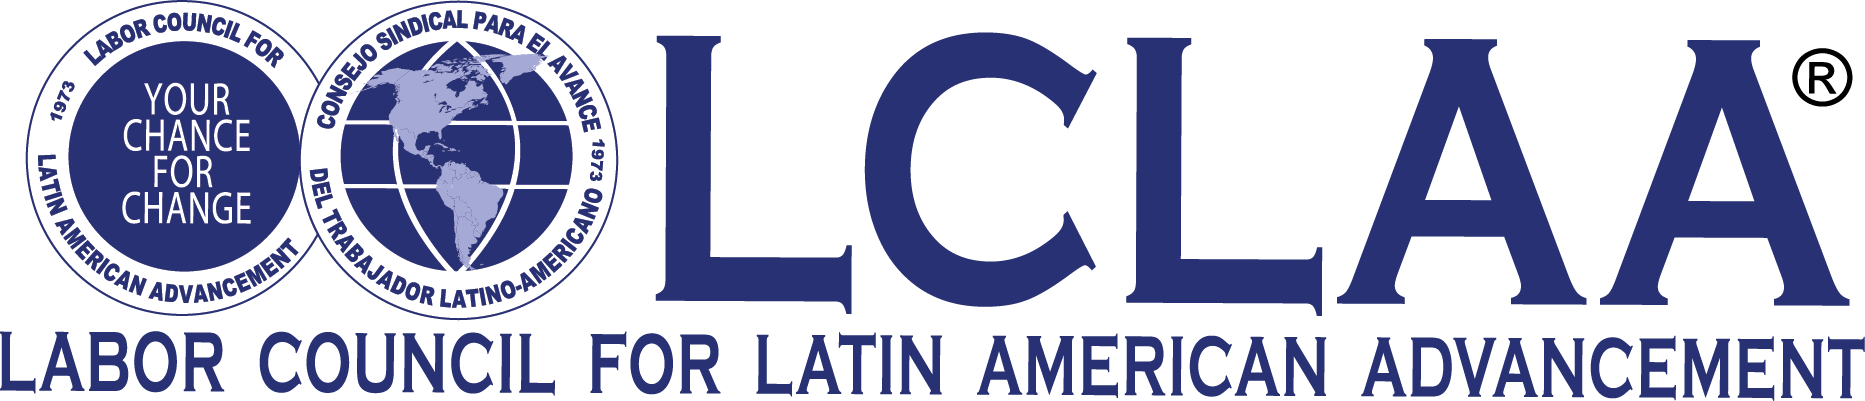 Labor Council for Latin American Advancement - 7.21